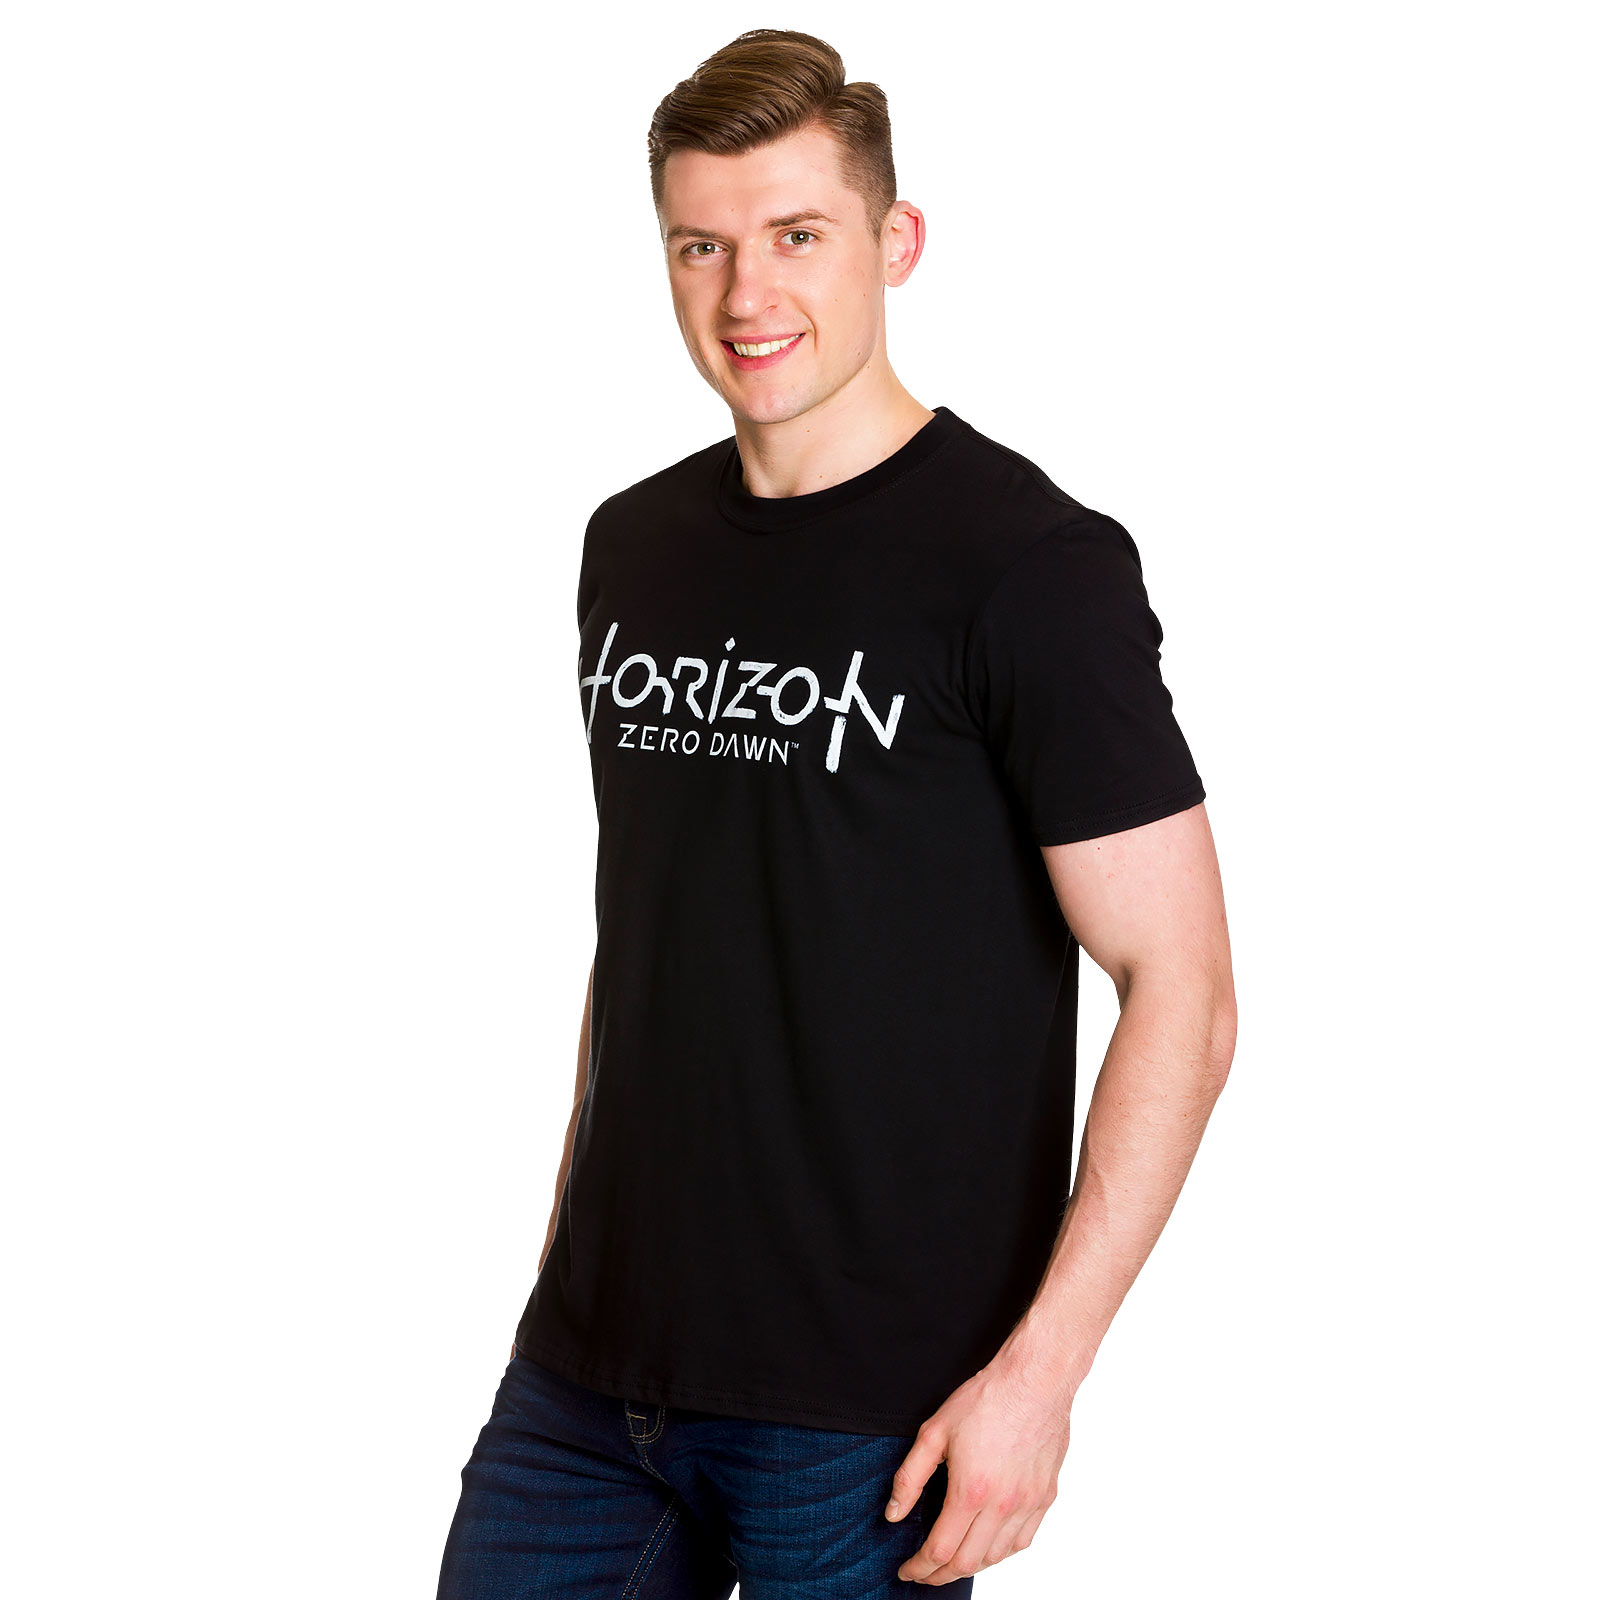 Horizon Zero Dawn - T-shirt logo noir